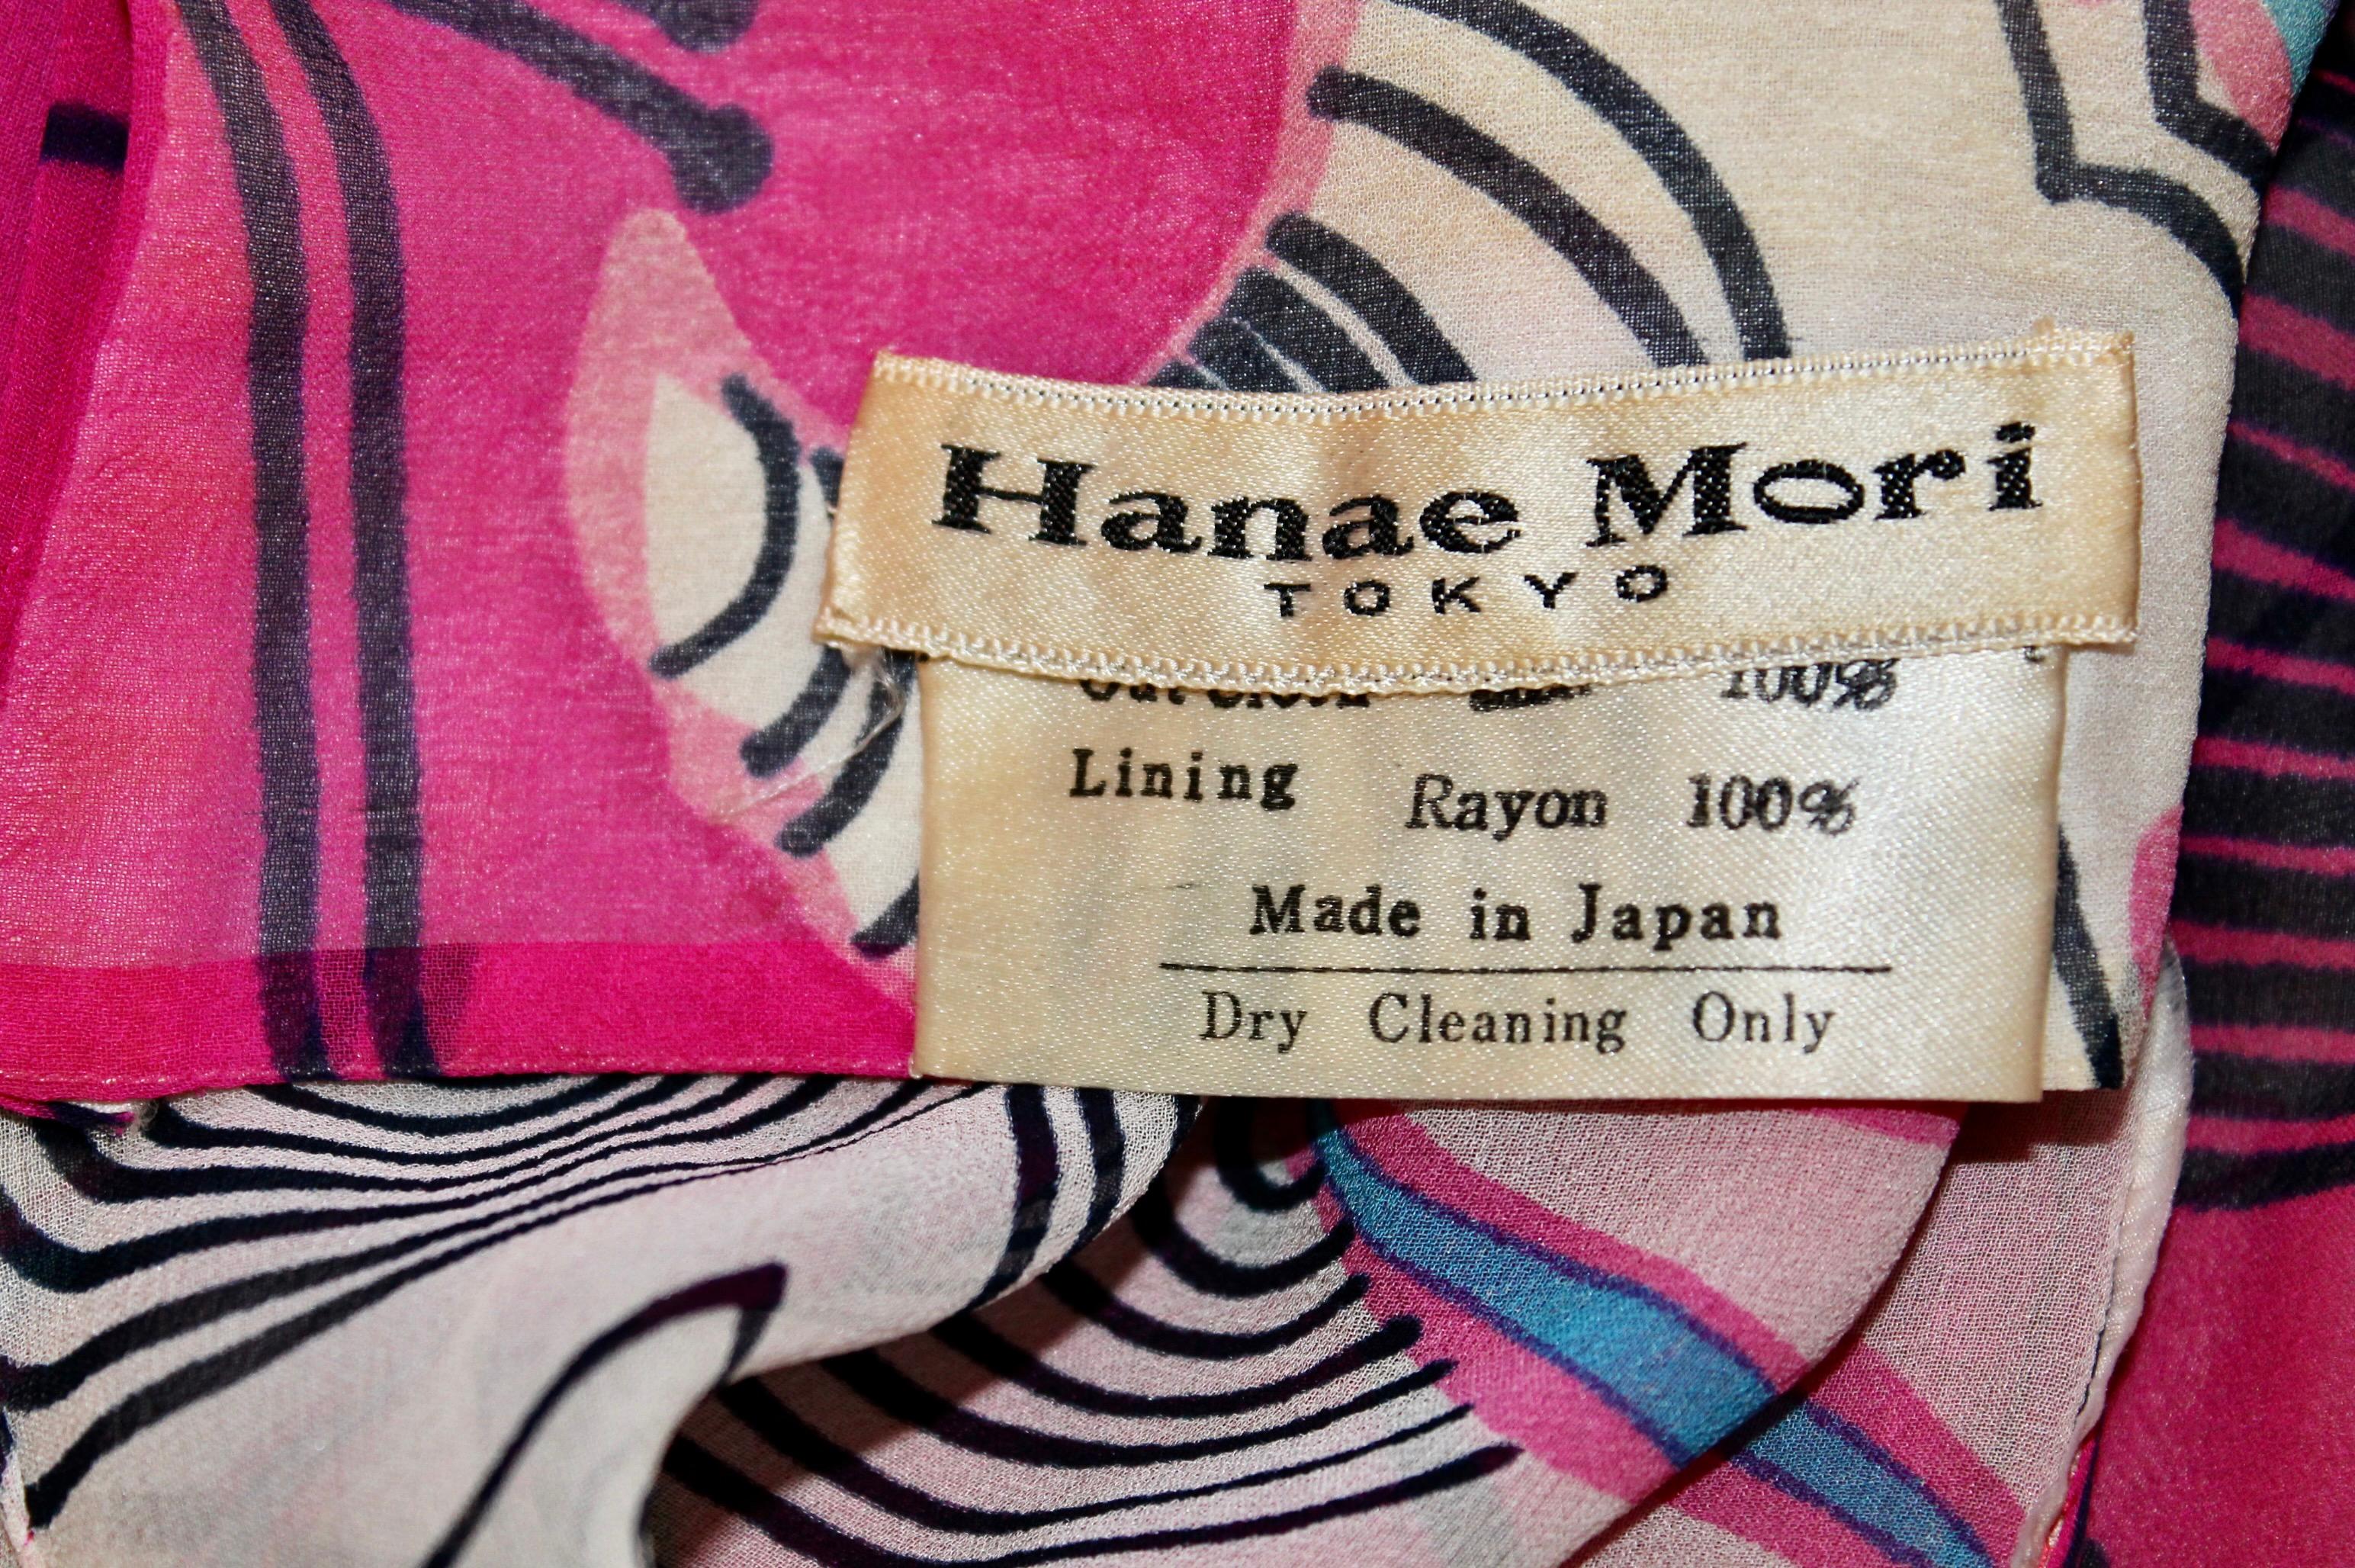 Hanae Mori, Tokyo 1970 Silk Chiffon Dress For Sale 6